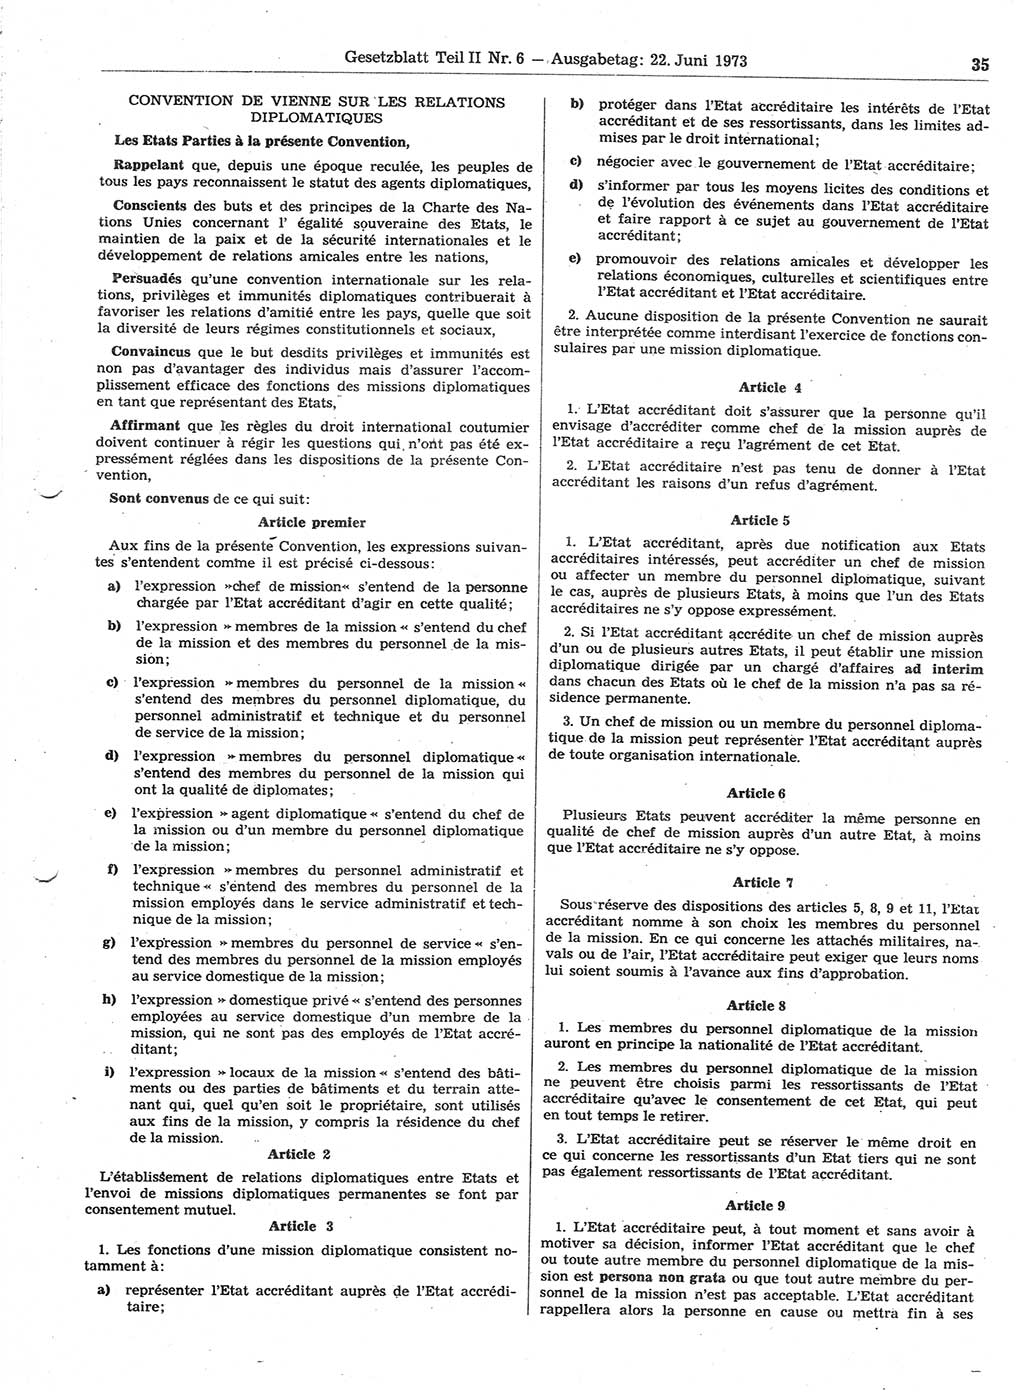 Gesetzblatt (GBl.) der Deutschen Demokratischen Republik (DDR) Teil ⅠⅠ 1973, Seite 35 (GBl. DDR ⅠⅠ 1973, S. 35)